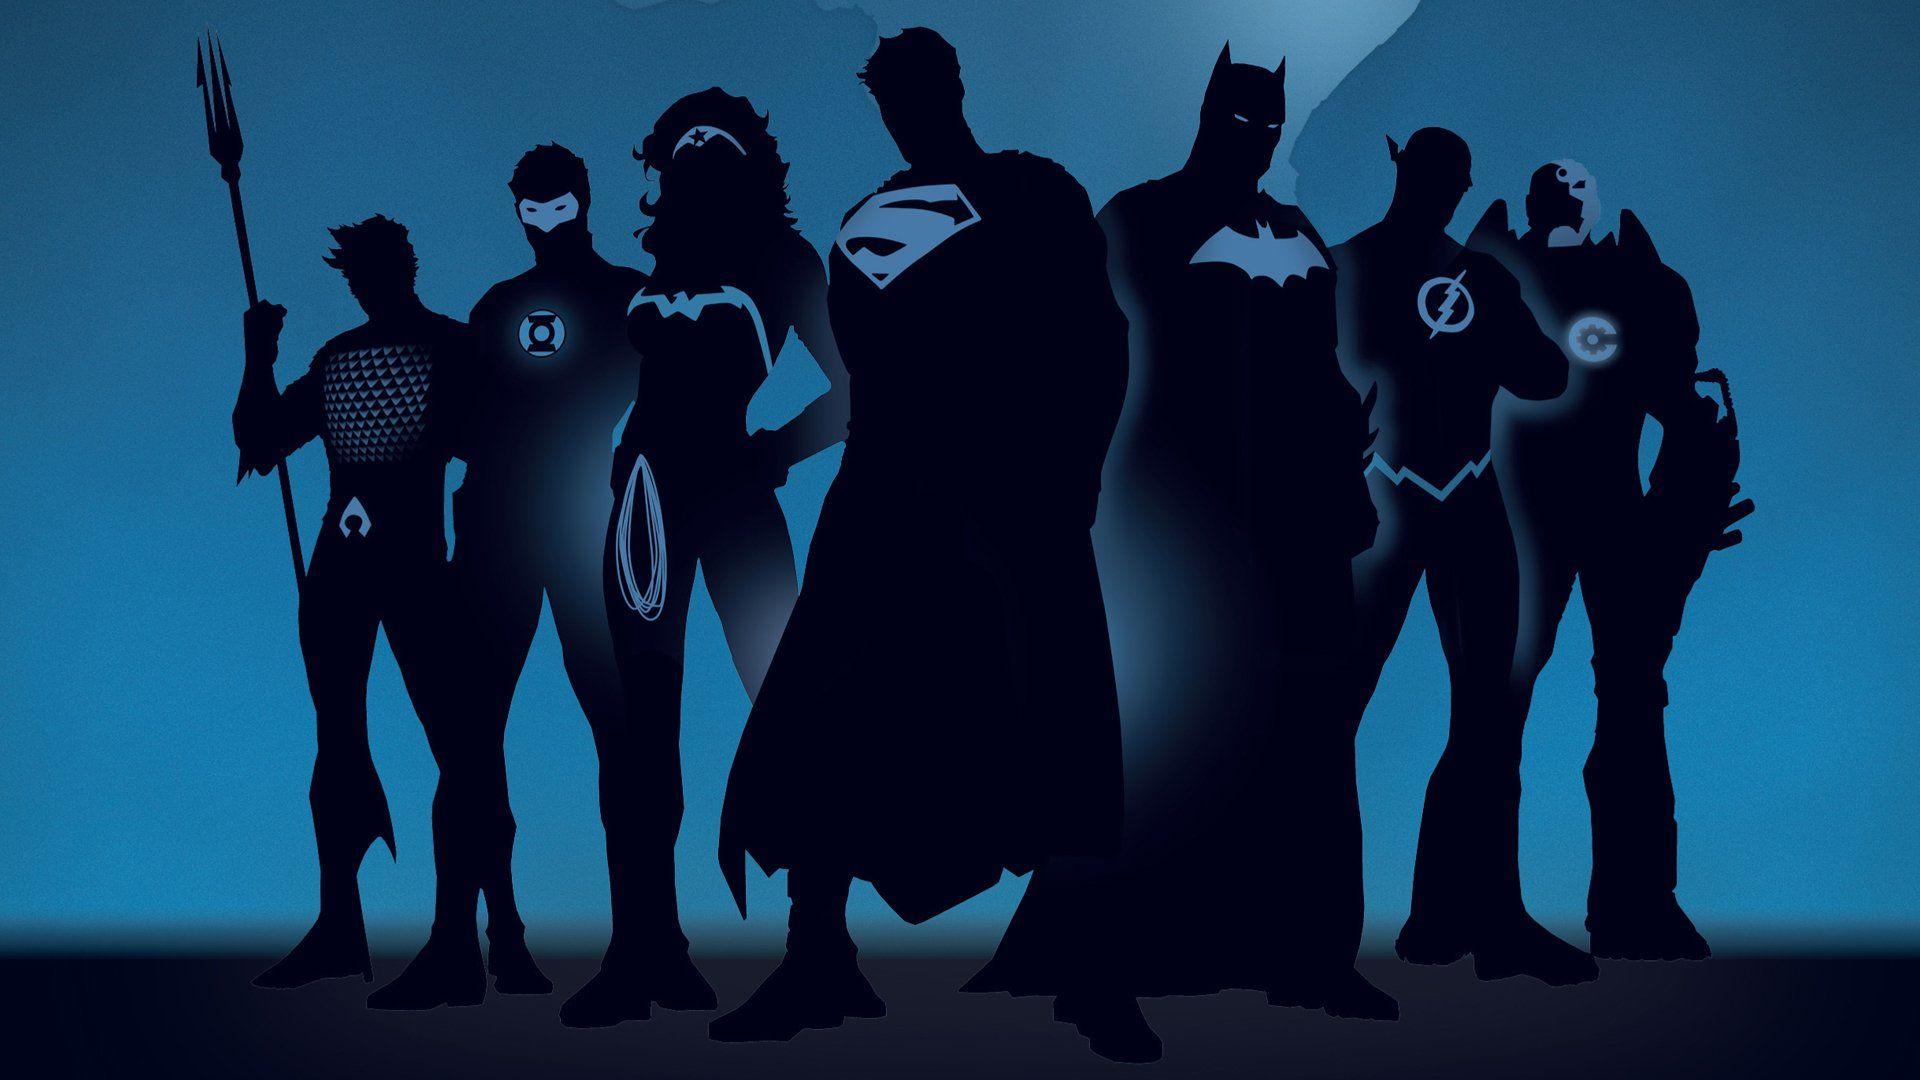 Justice League Batman Cartoon Wallpapers - Wallpaper Cave